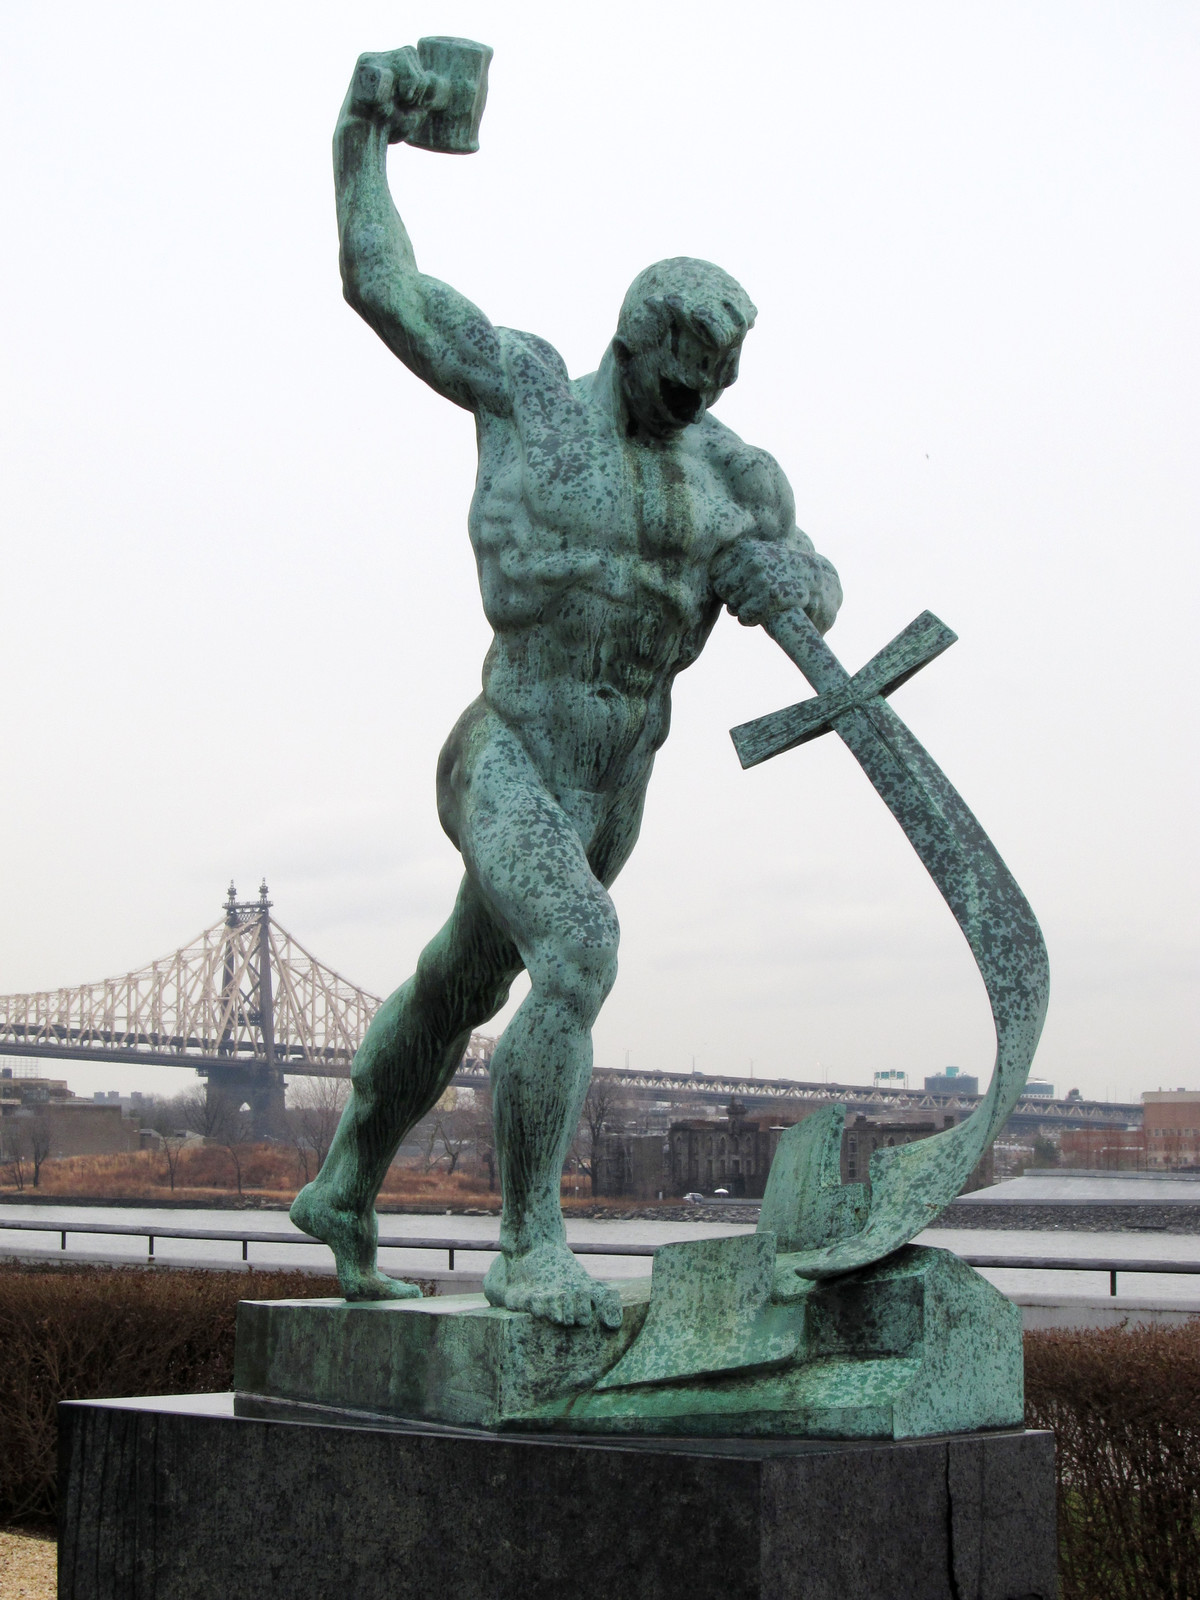 Schwerter zu Pflugscharen, Skulptur von Jewgeni Wiktorowitsch Wutschetitsch - 1959 Geschenk der Sowjetunion an die UNO - Garten im Hauptquartier der Vereinten Nationen in New York City (Wikimedia, Neptuul)